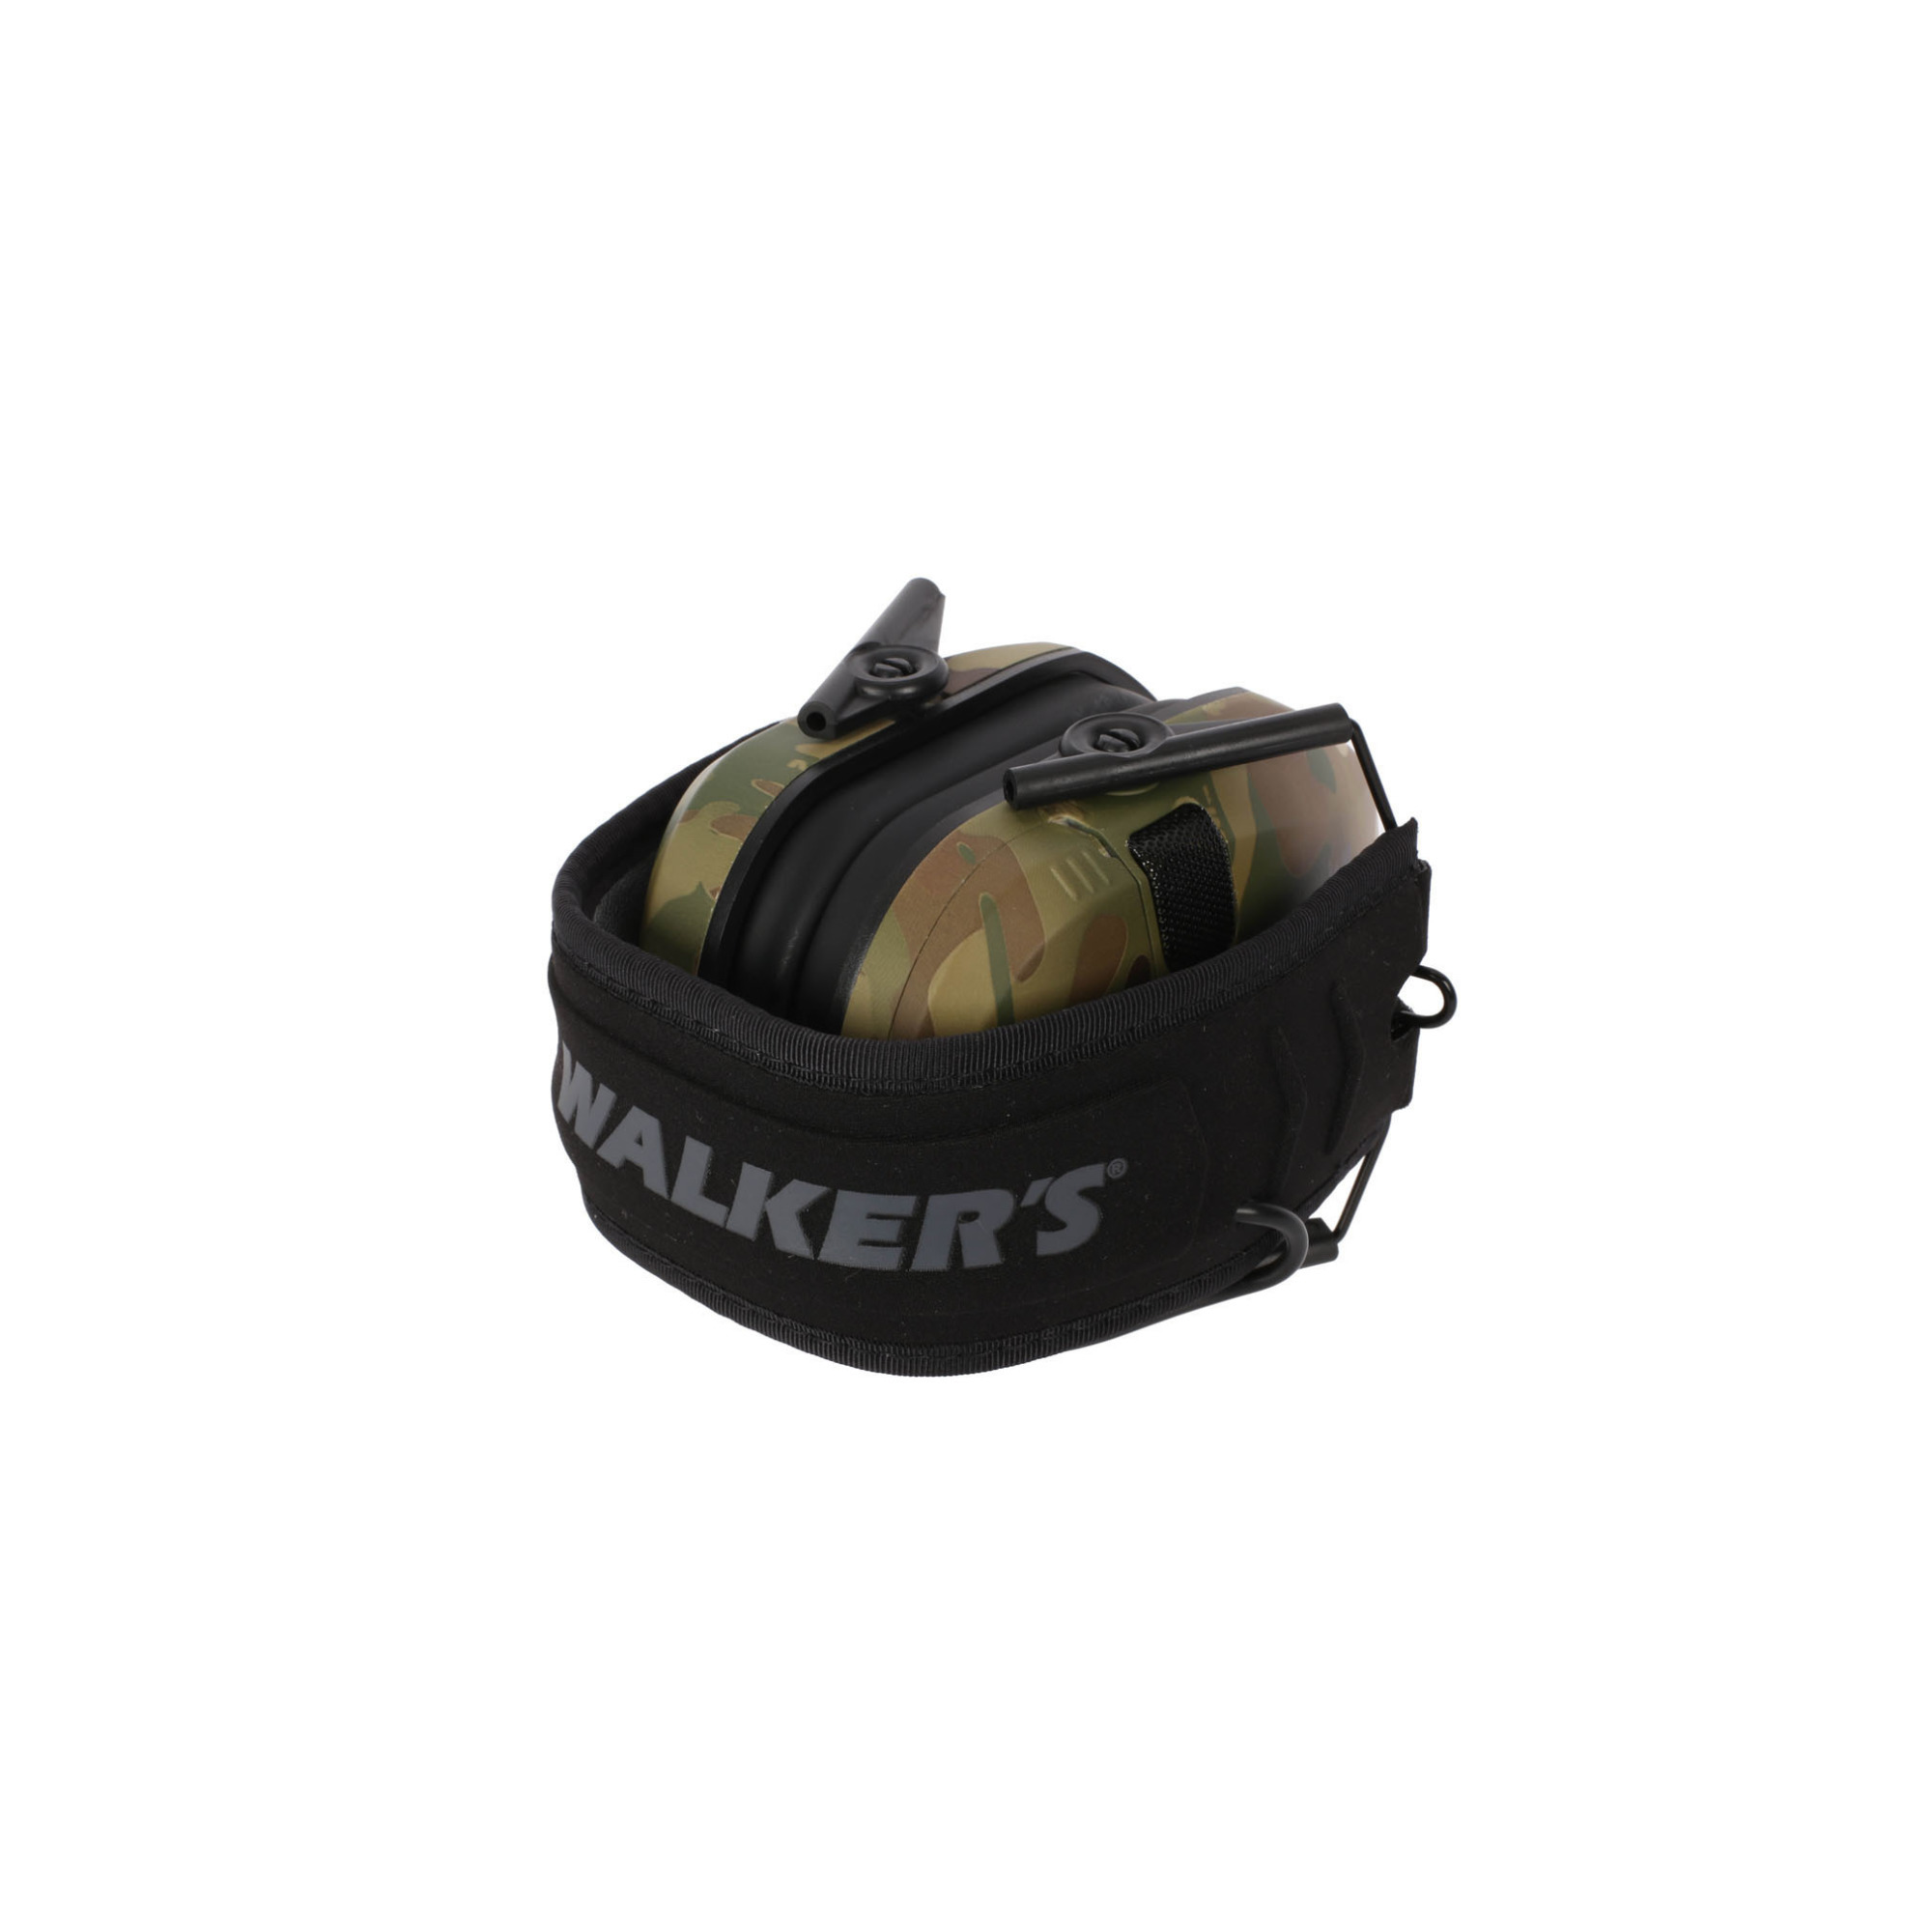 Walkers Walker’s Razor Slim Electronic Muff (MultiCam Camo) w/ Walkie Talkie & Glasses